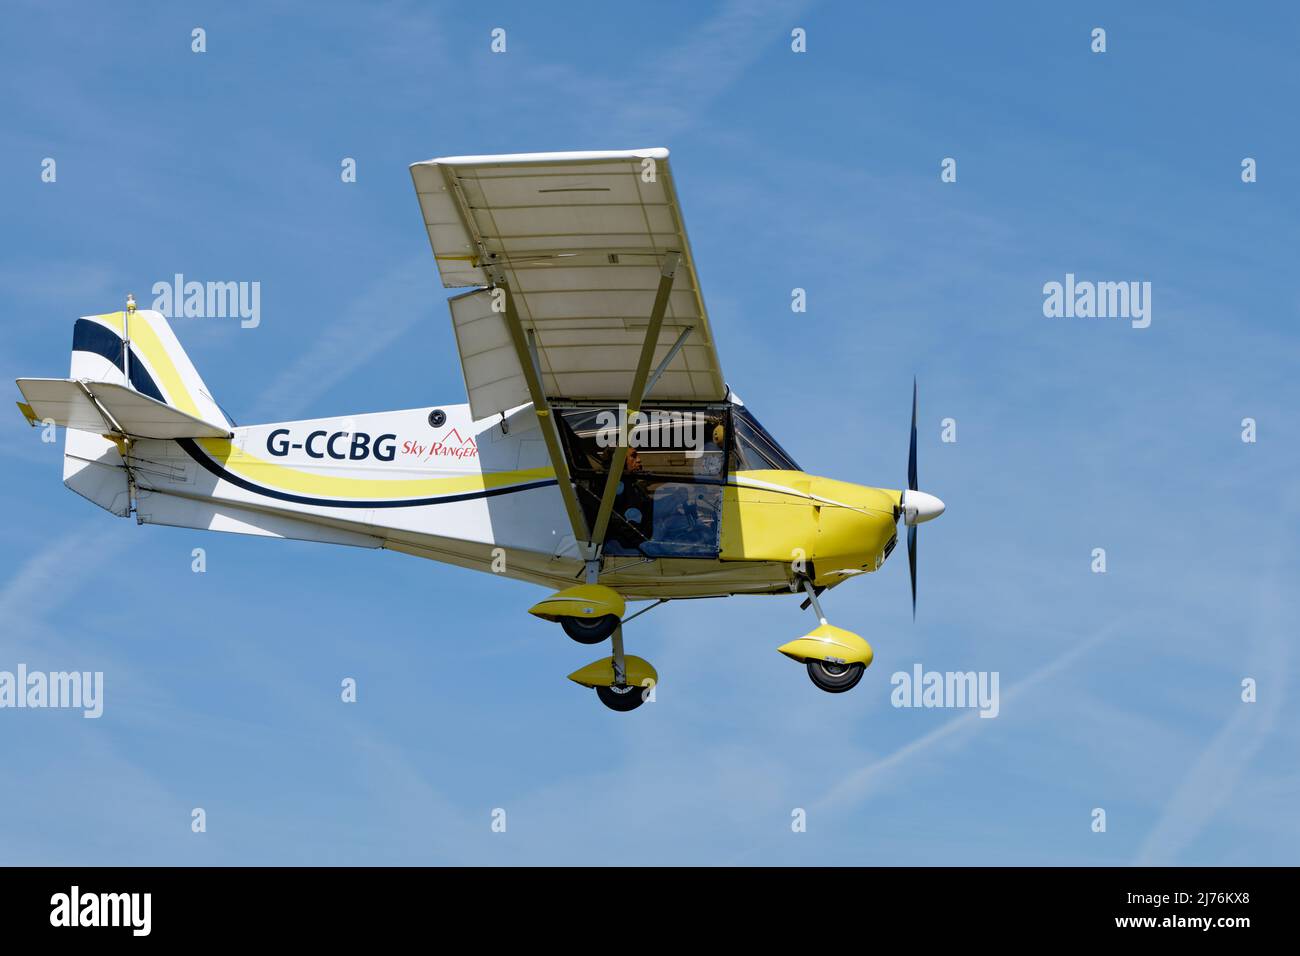 L'avion de microlumière de Skyranger Swift G-CCBG arrive au-dessus de l'aérodrome de Popham, dans le Hampshire, en Angleterre, pour assister à la réunion annuelle de survol d'avions de microlumière Banque D'Images